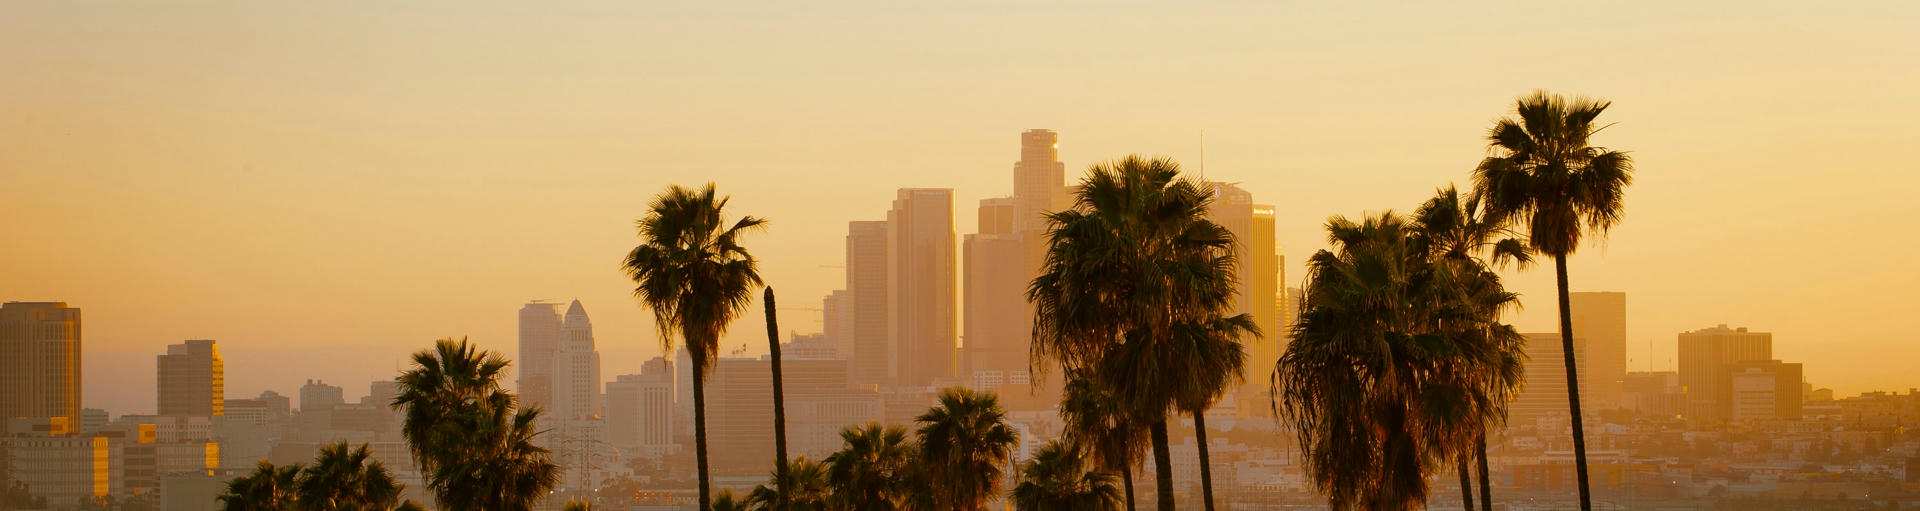 Die Skyline von Los Angeles bei Sonnenuntergang